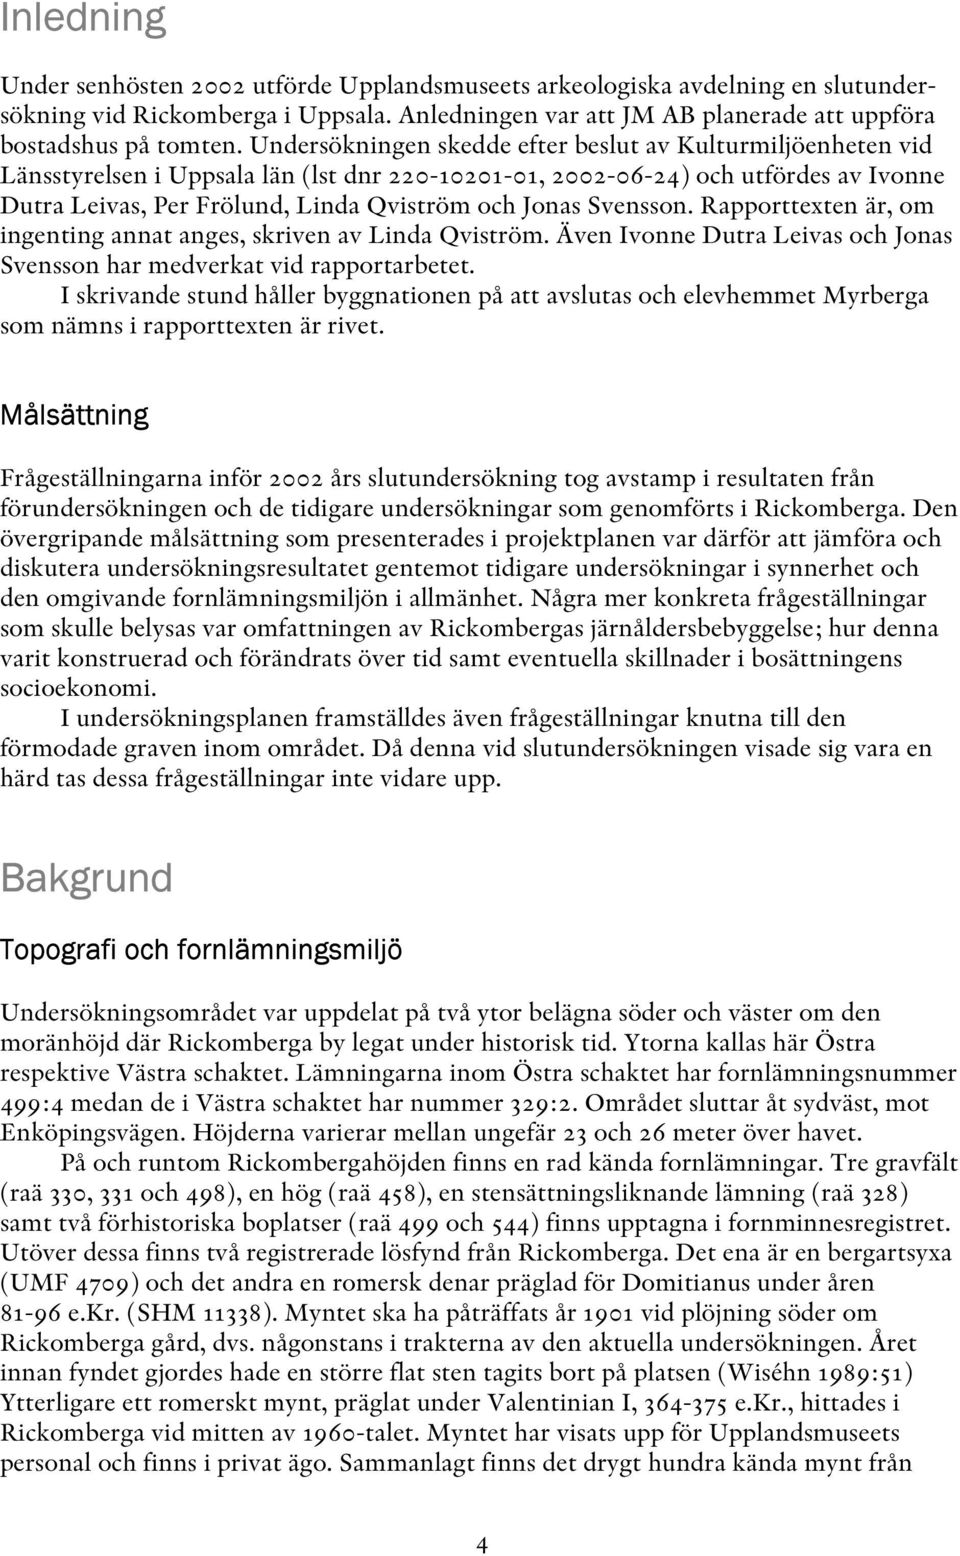 Svensson. Rapporttexten är, om ingenting annat anges, skriven av Linda Qviström. Även Ivonne Dutra Leivas och Jonas Svensson har medverkat vid rapportarbetet.